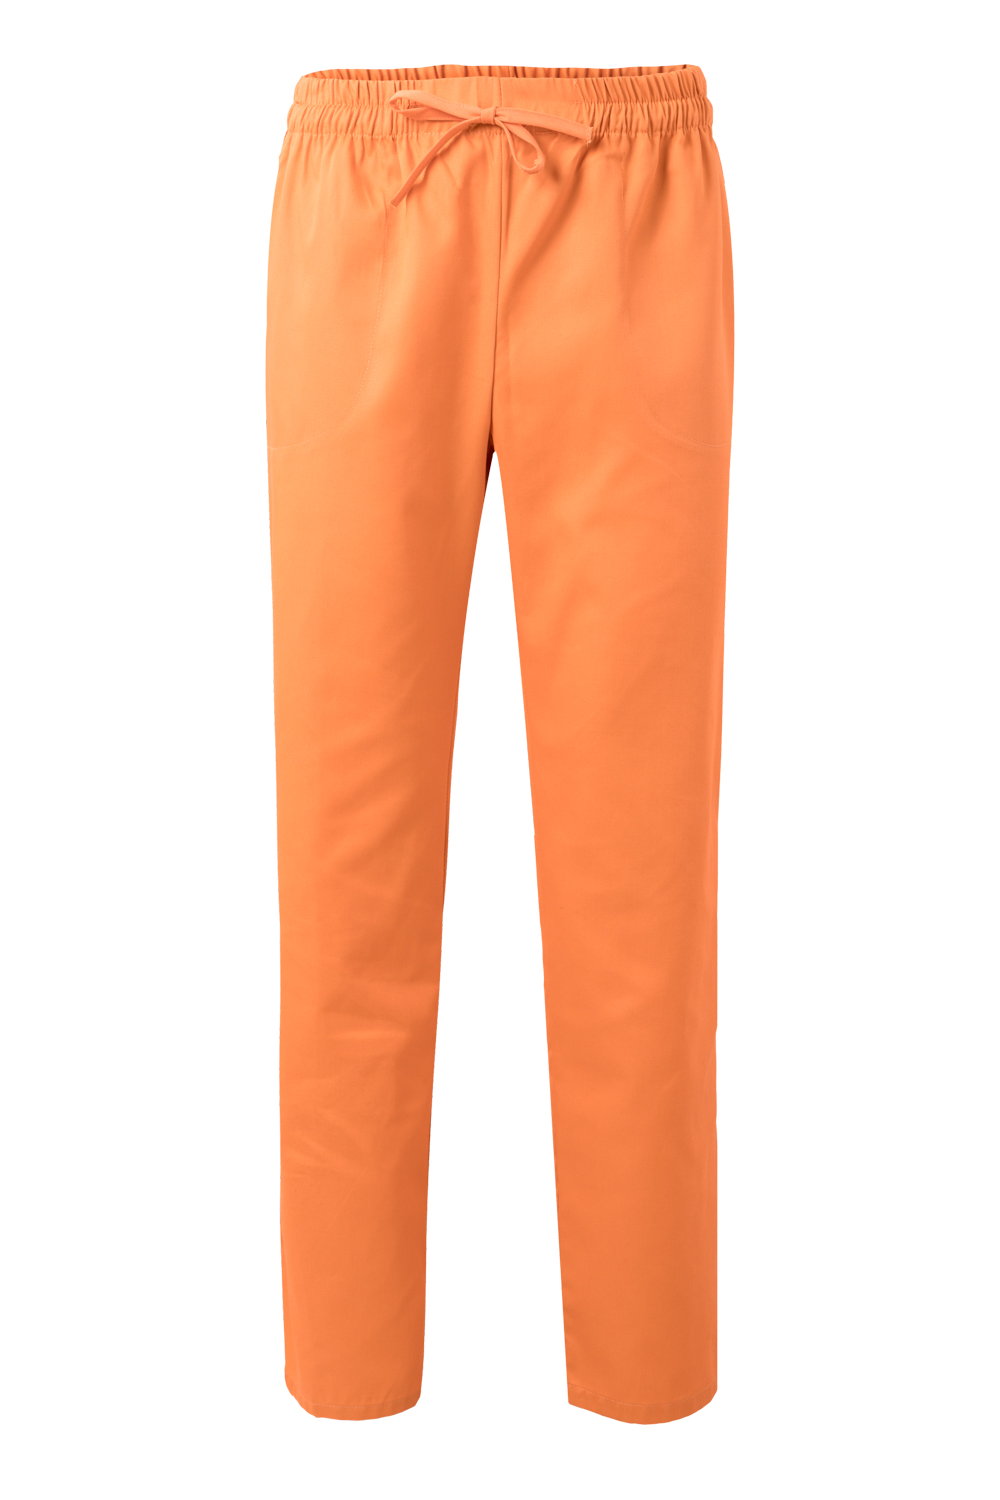 VELILLA GROUP EUROPE S.L.U. Dámske kuchárske nohavice - oranžová 4XL